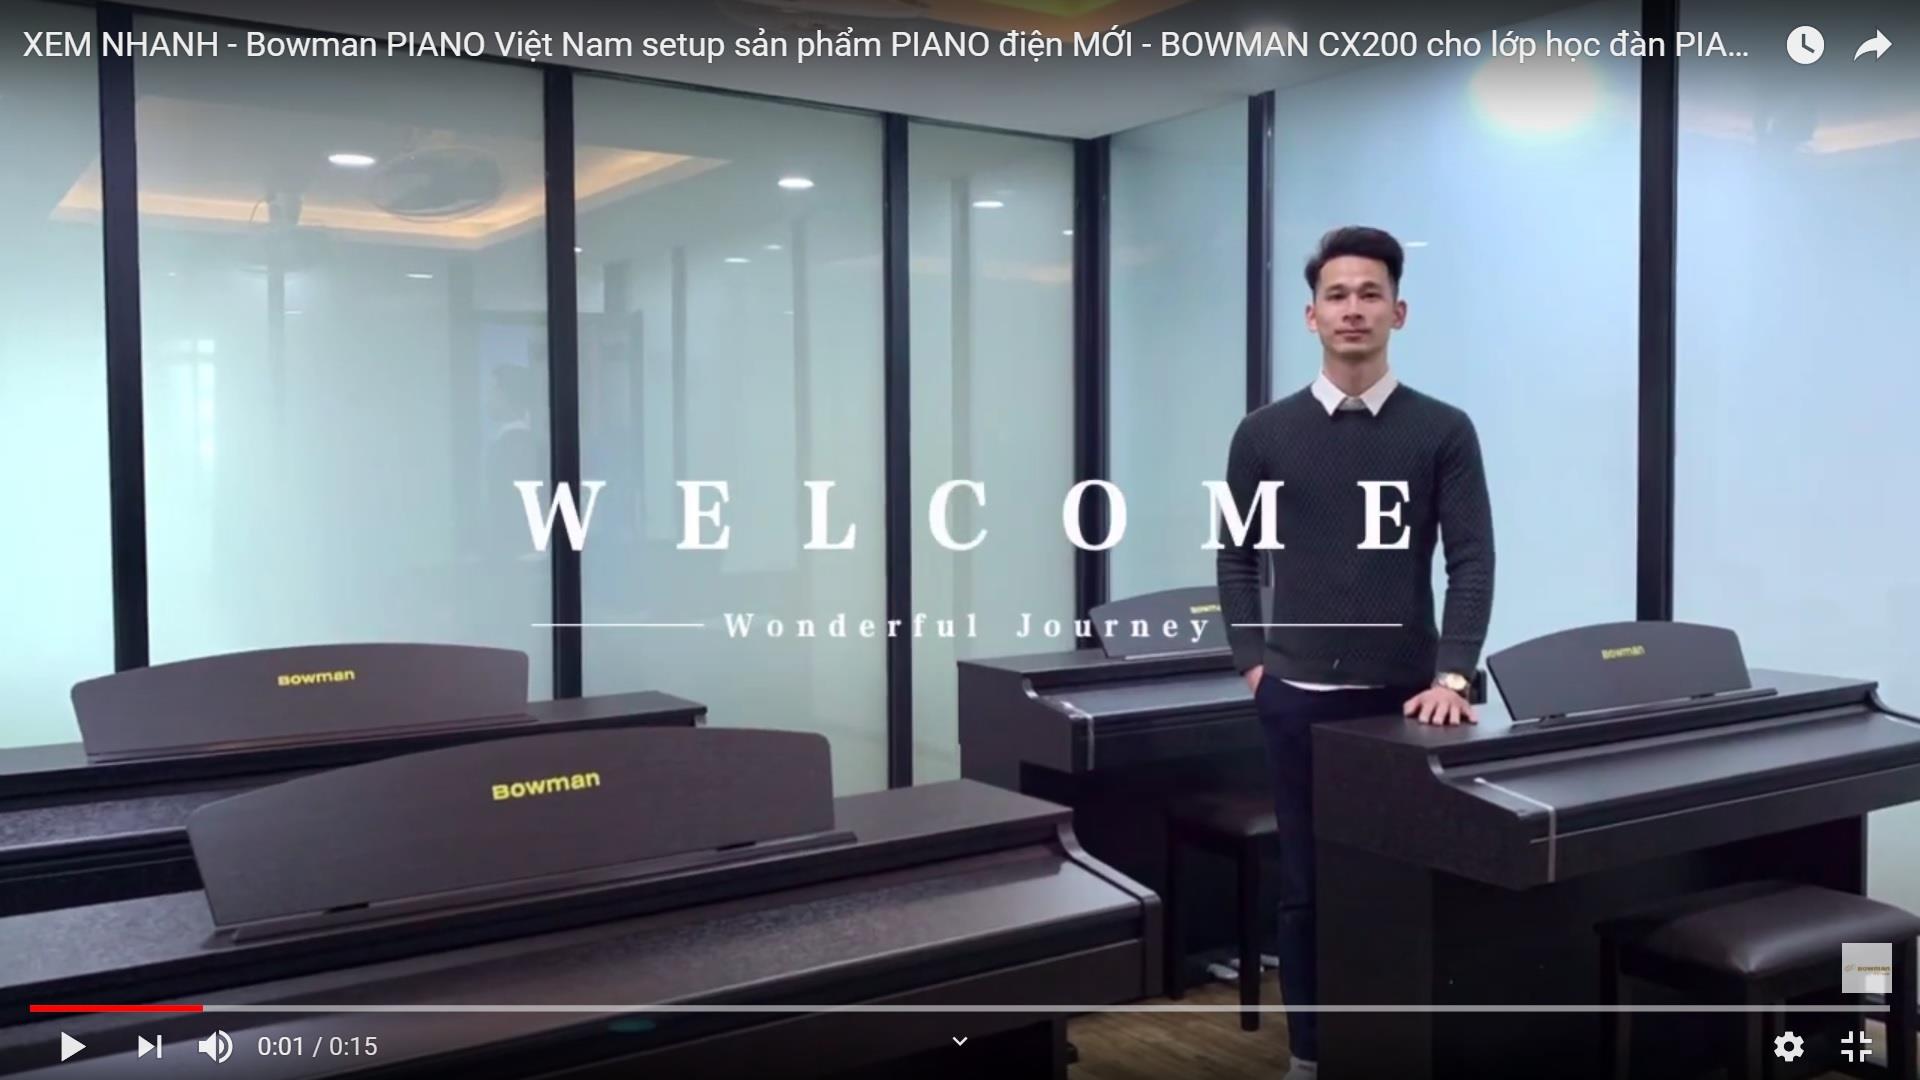 XEM NHANH - Bowman PIANO Việt Nam setup sản phẩm PIANO điện MỚI - BOWMAN CX200 cho lớp học đàn PIANO